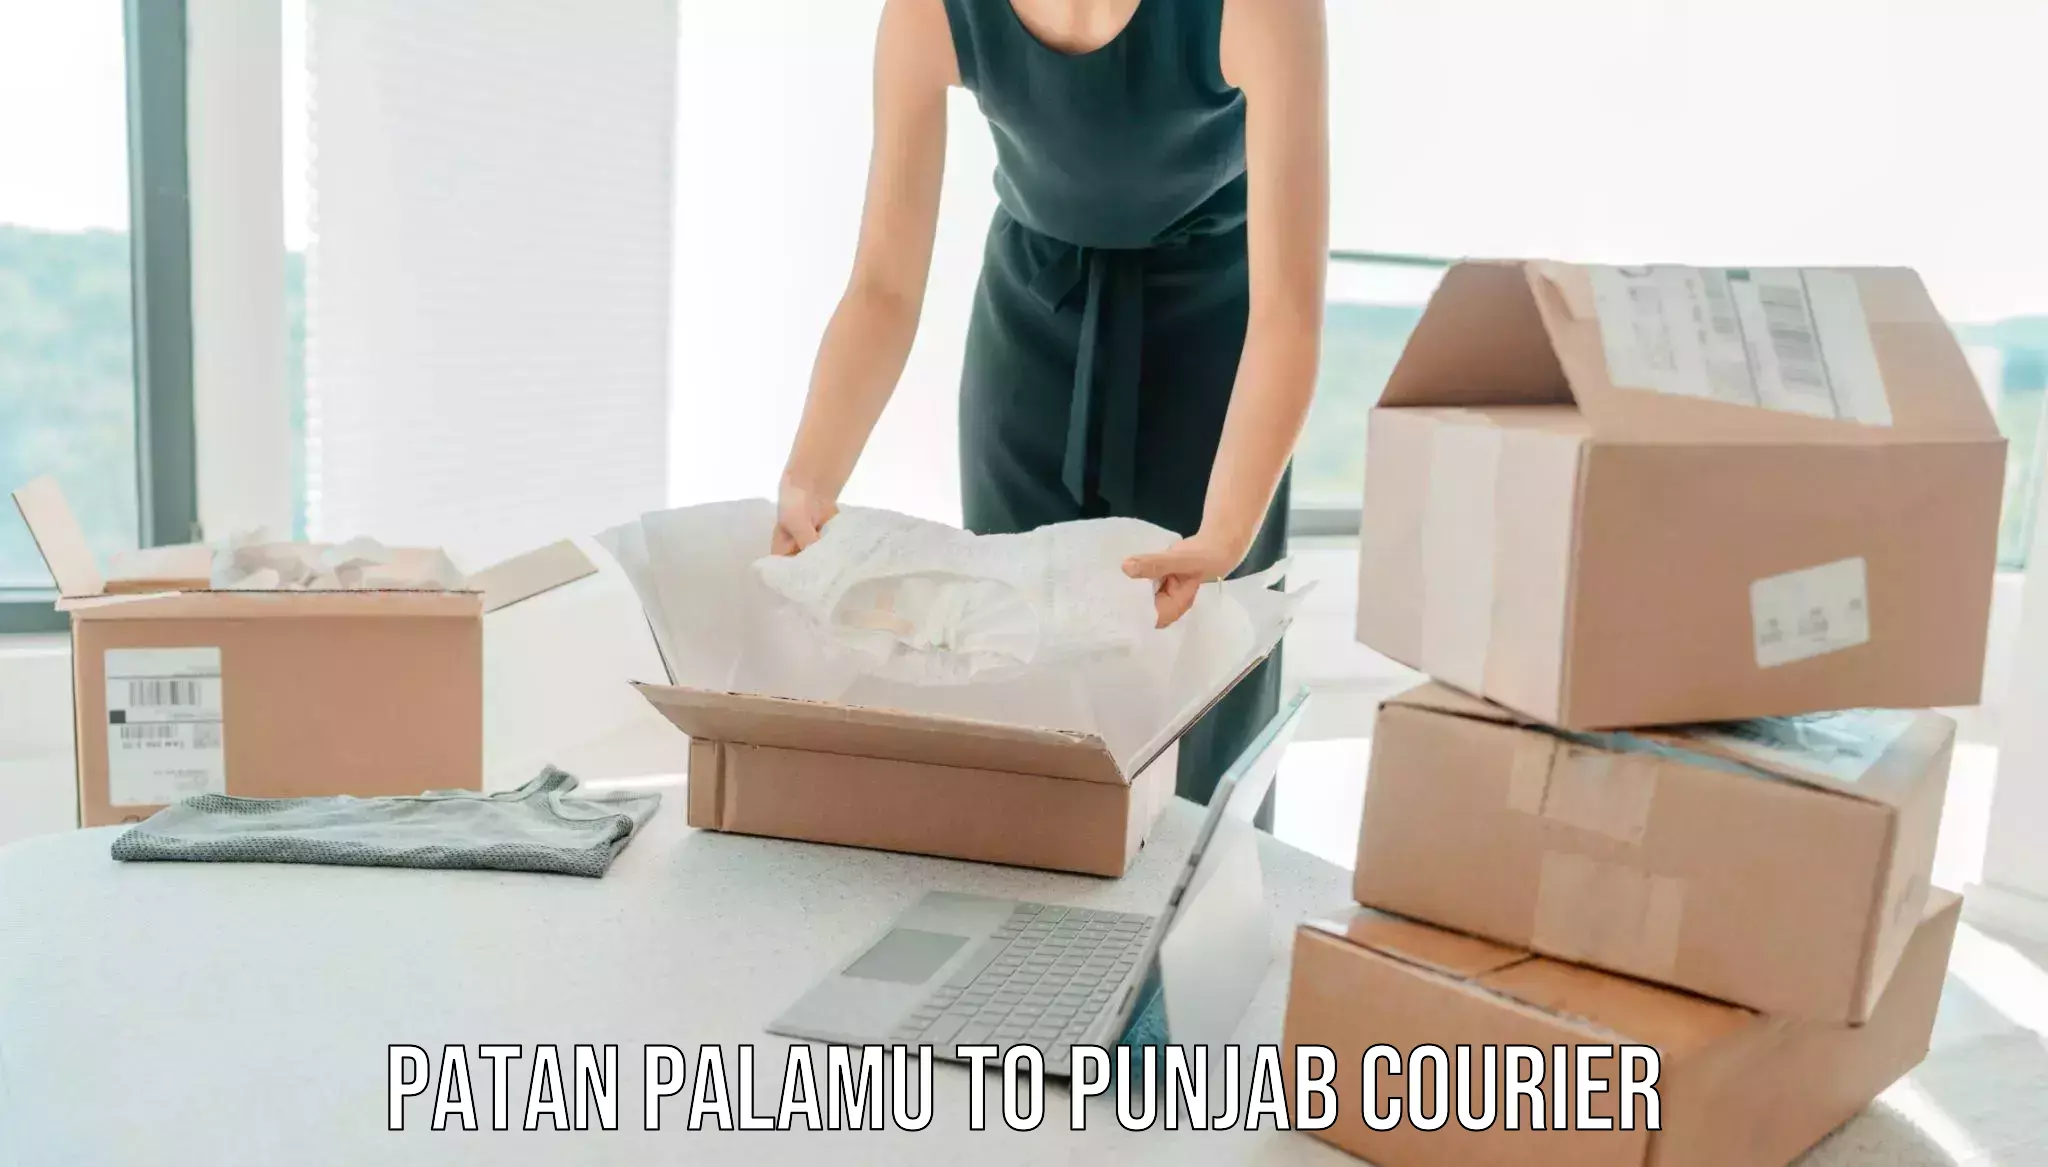 Furniture moving and handling Patan Palamu to Patti Tarn Tara